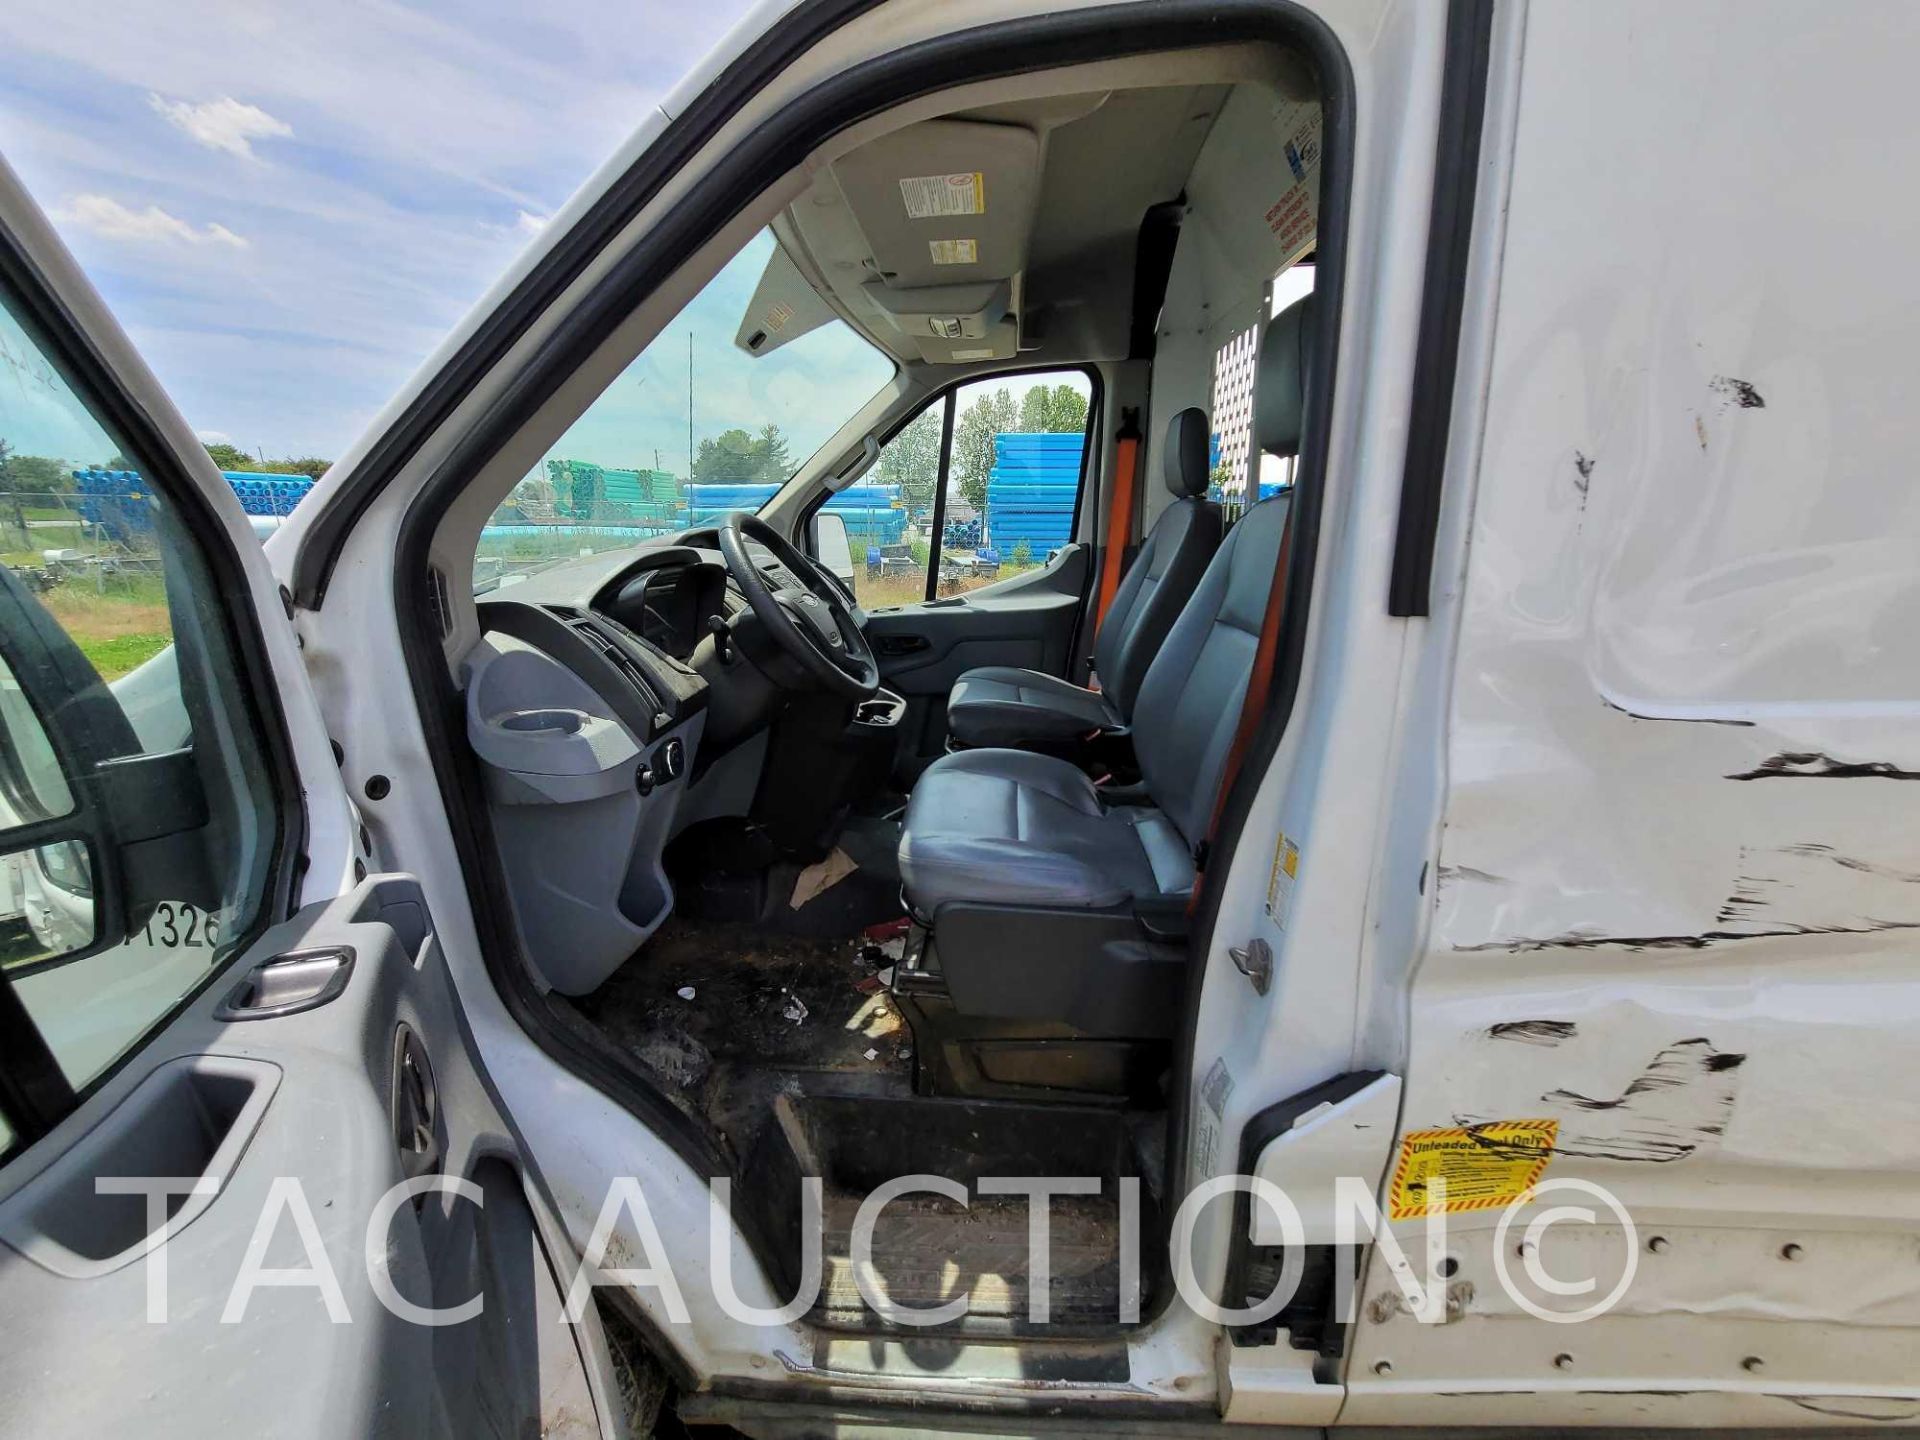 2019 Ford Transit 150 Cargo Van - Image 12 of 49